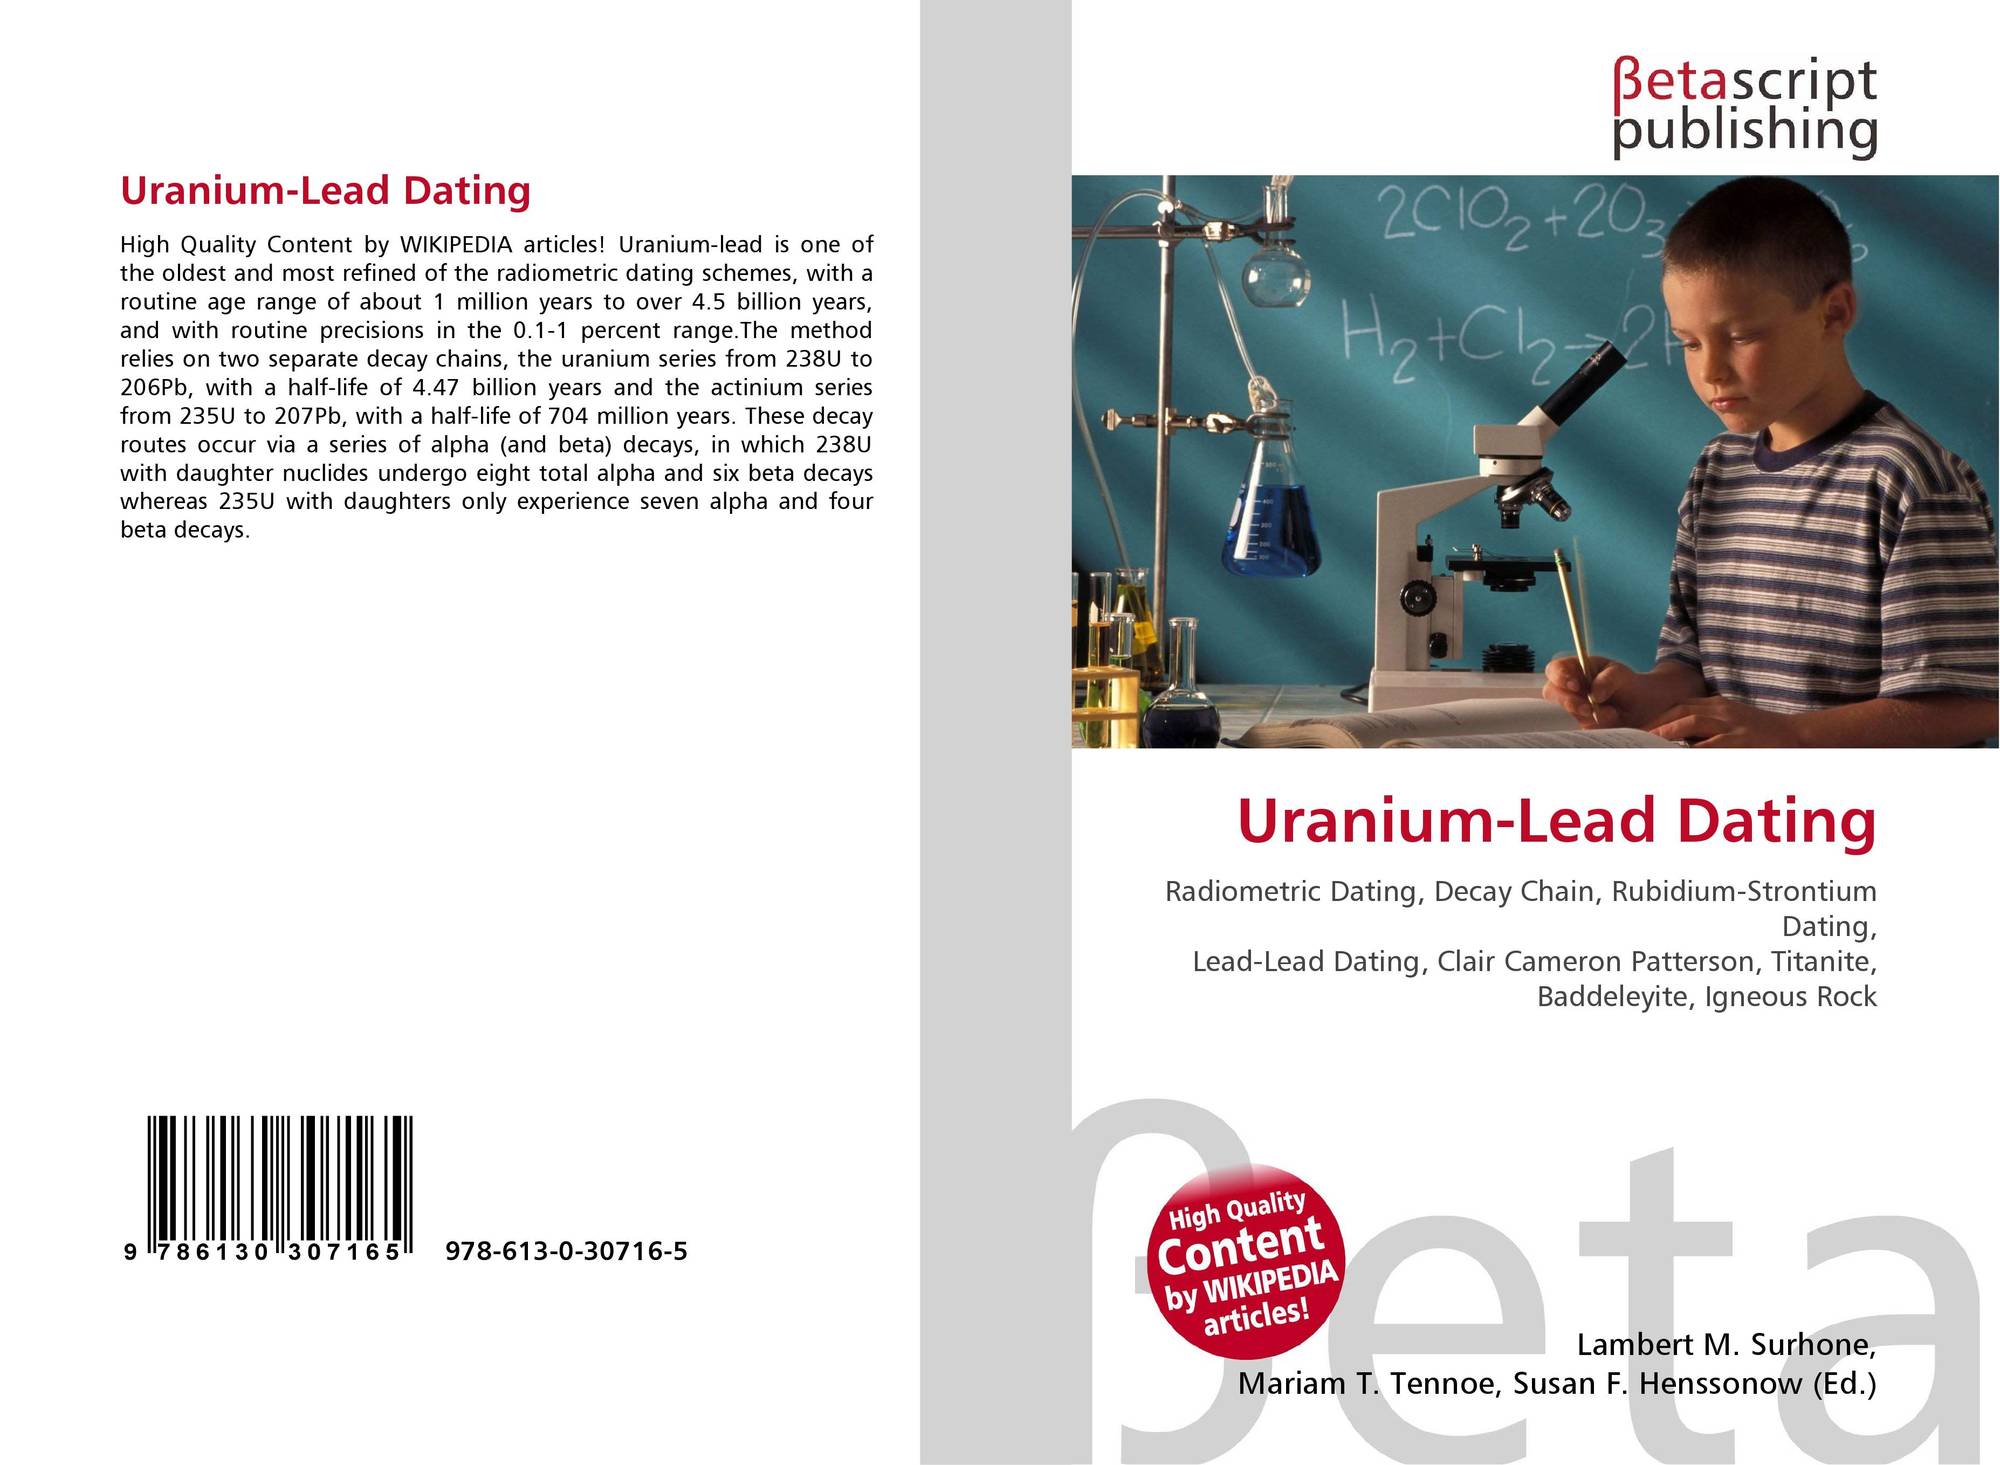 Uranium-lead dating